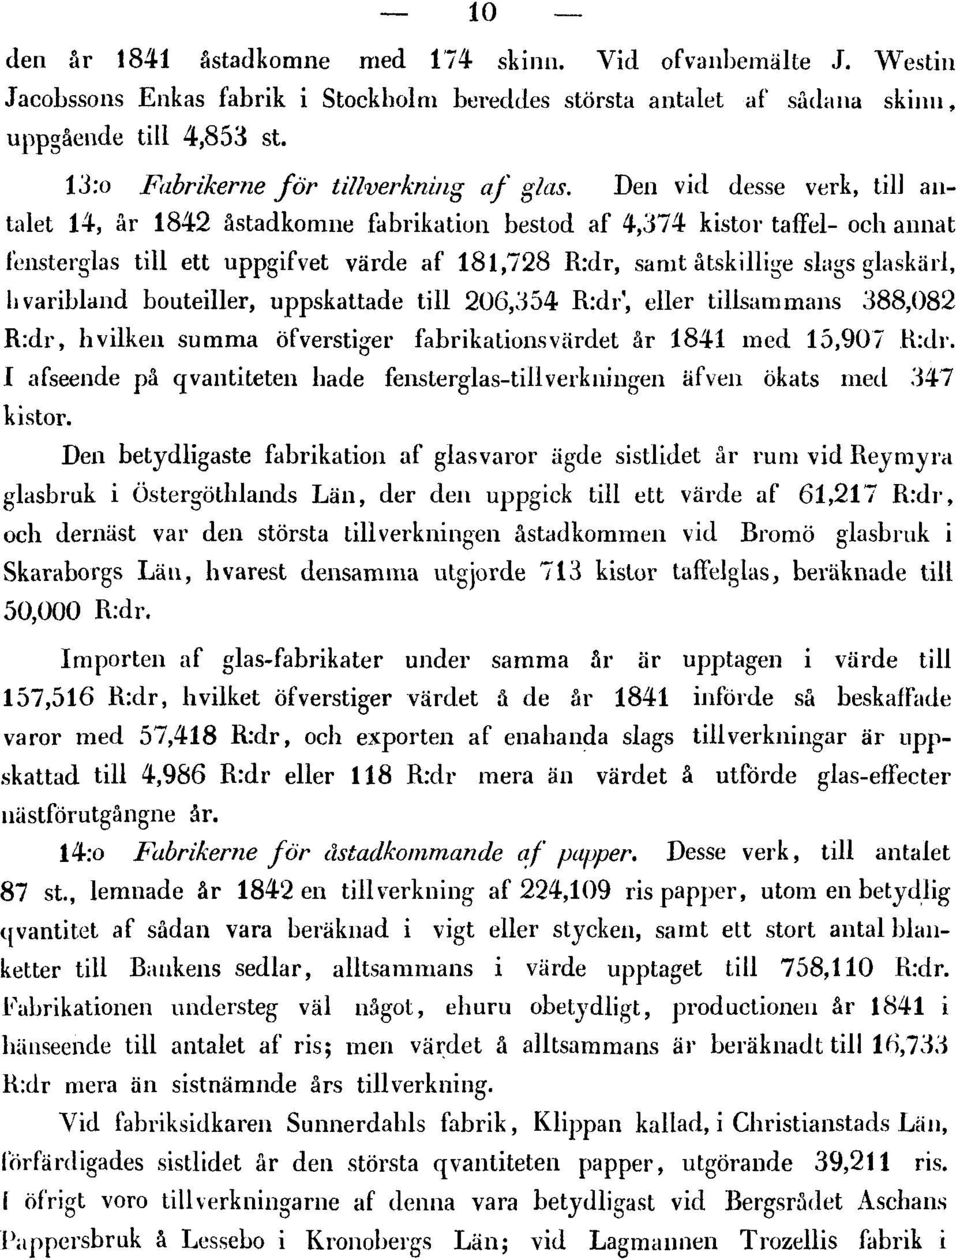 Den vid desse verk, till antalet 14, år 1842 åstadkomne fabrikation bestod af 4,374 kistor taffel- och annat fensterglas till ett uppgifvet värde af 181,728 R:dr, samt åtskillige slags glaskärl,